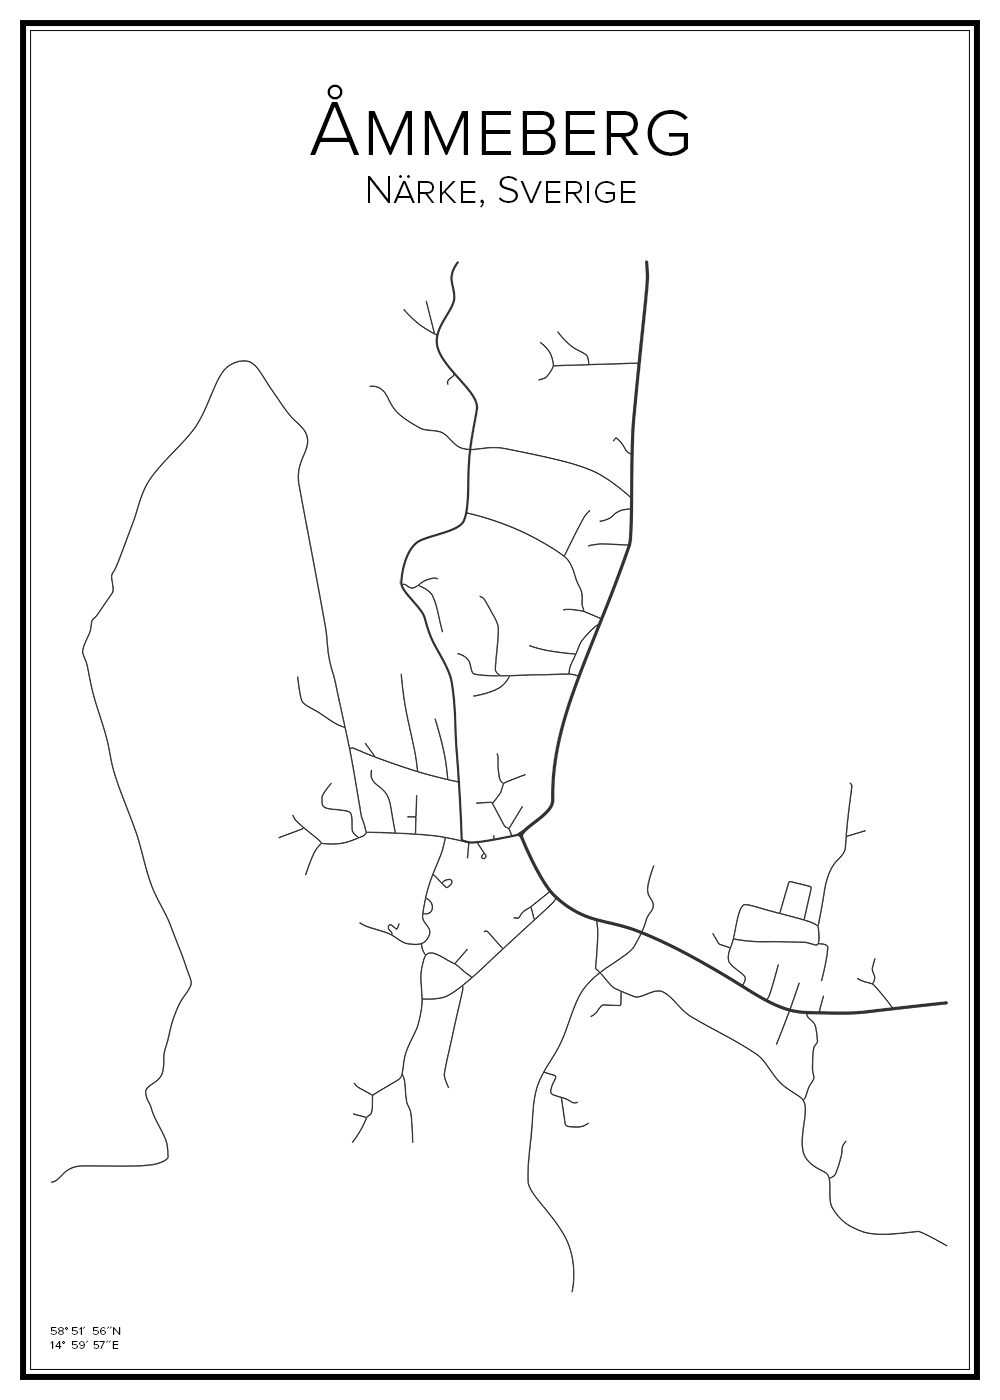 Stadskarta över Åmmeberg